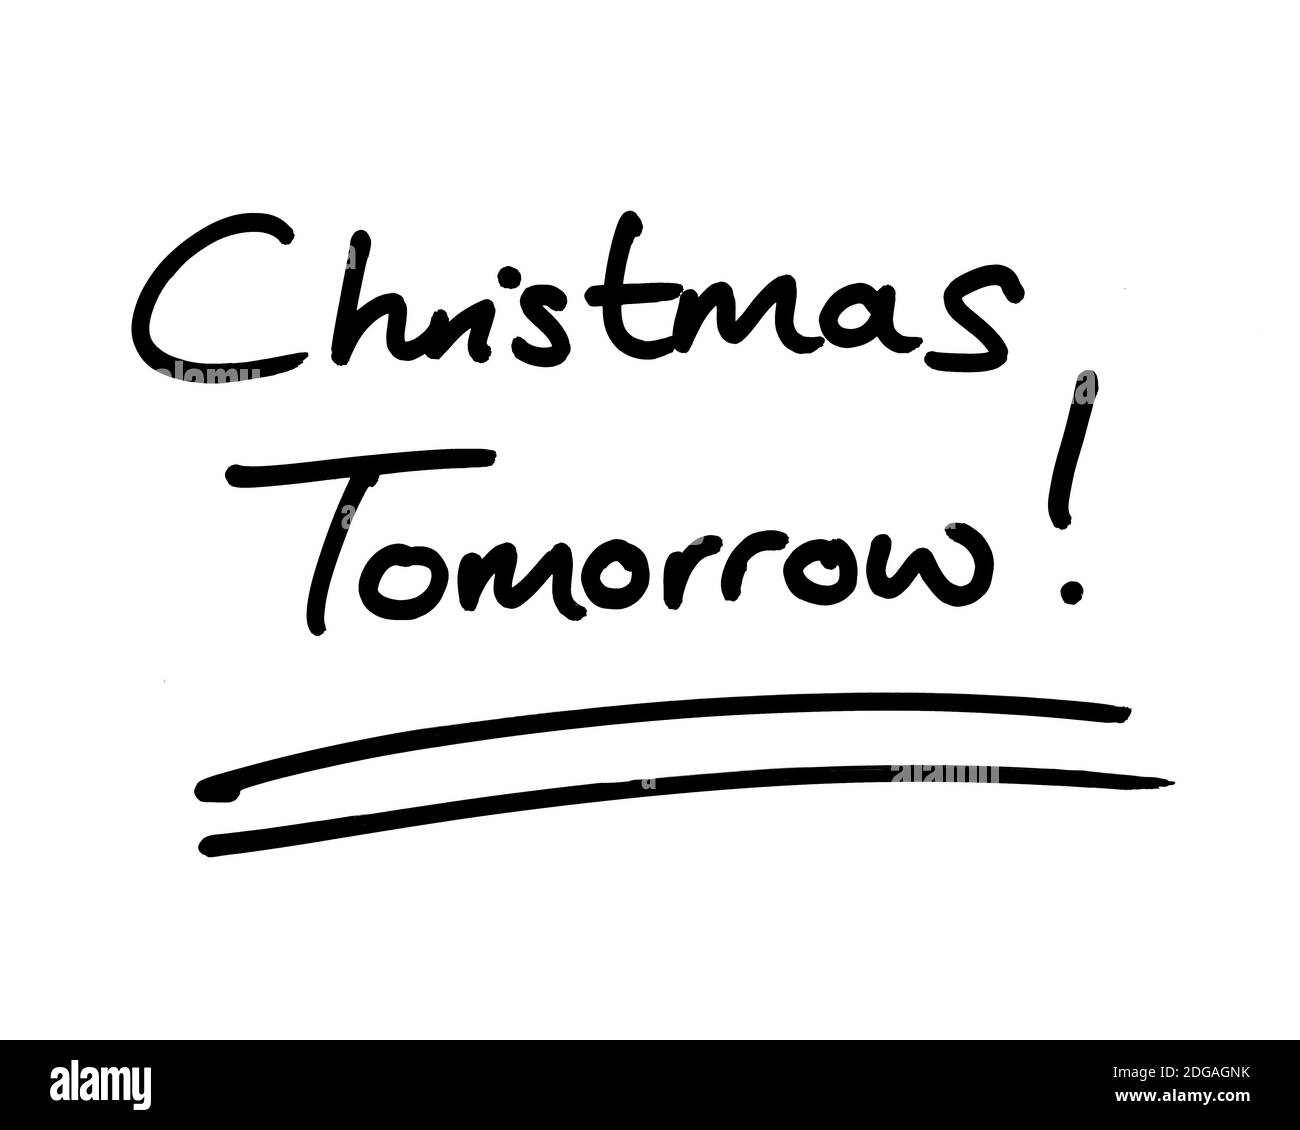 Christmas Tomorrow! handwritten on a white background. Stock Photo